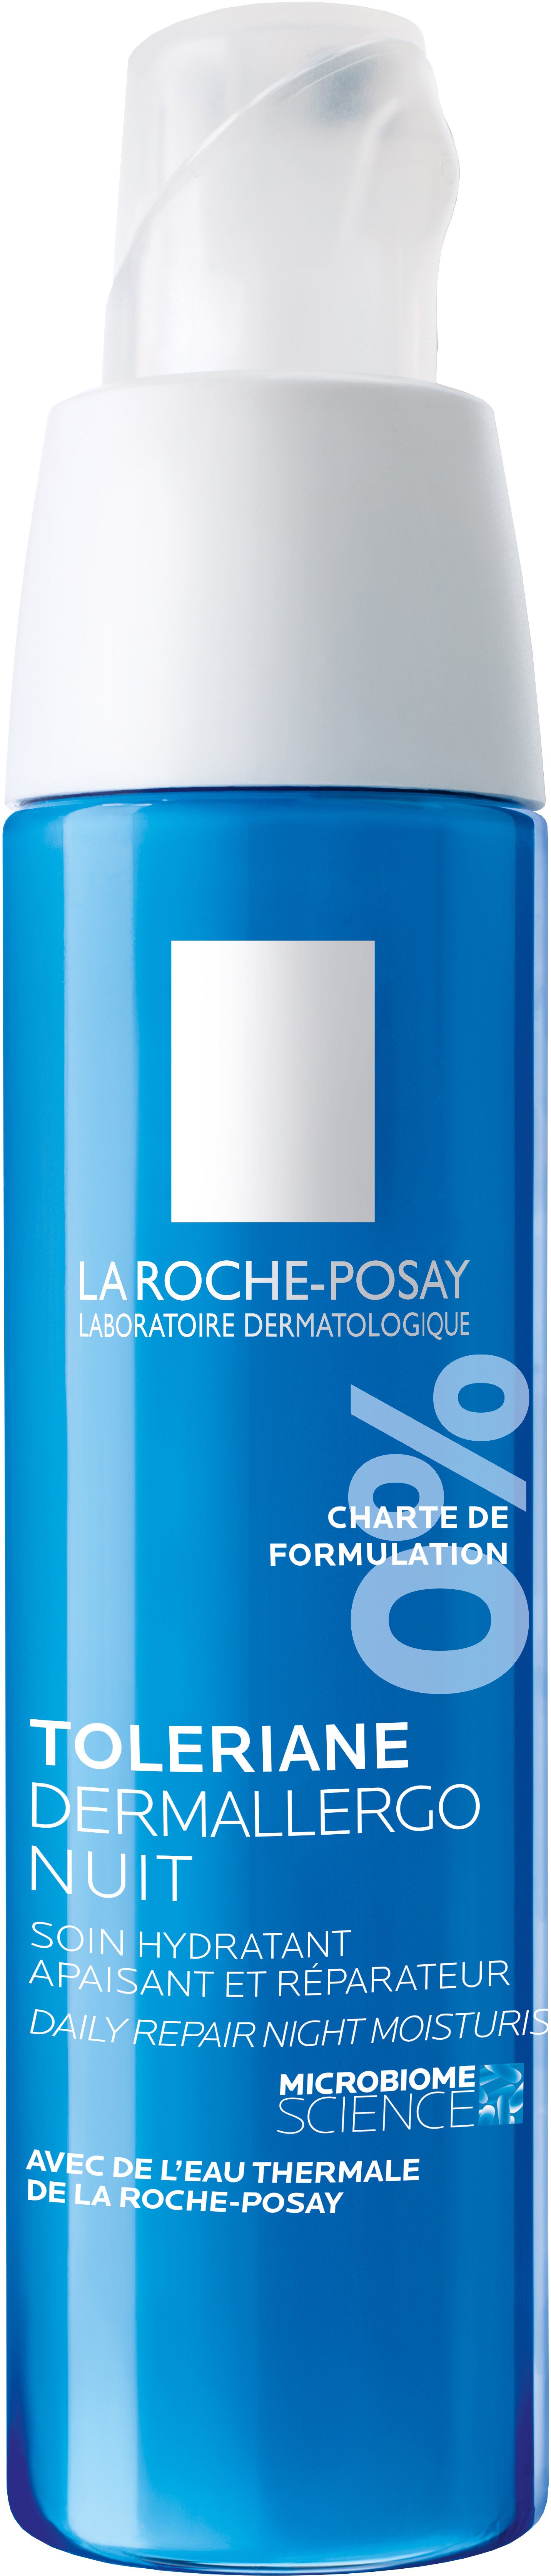 La Roche-Posay Toleriane Dermallergo Overnight Creme 40 ml